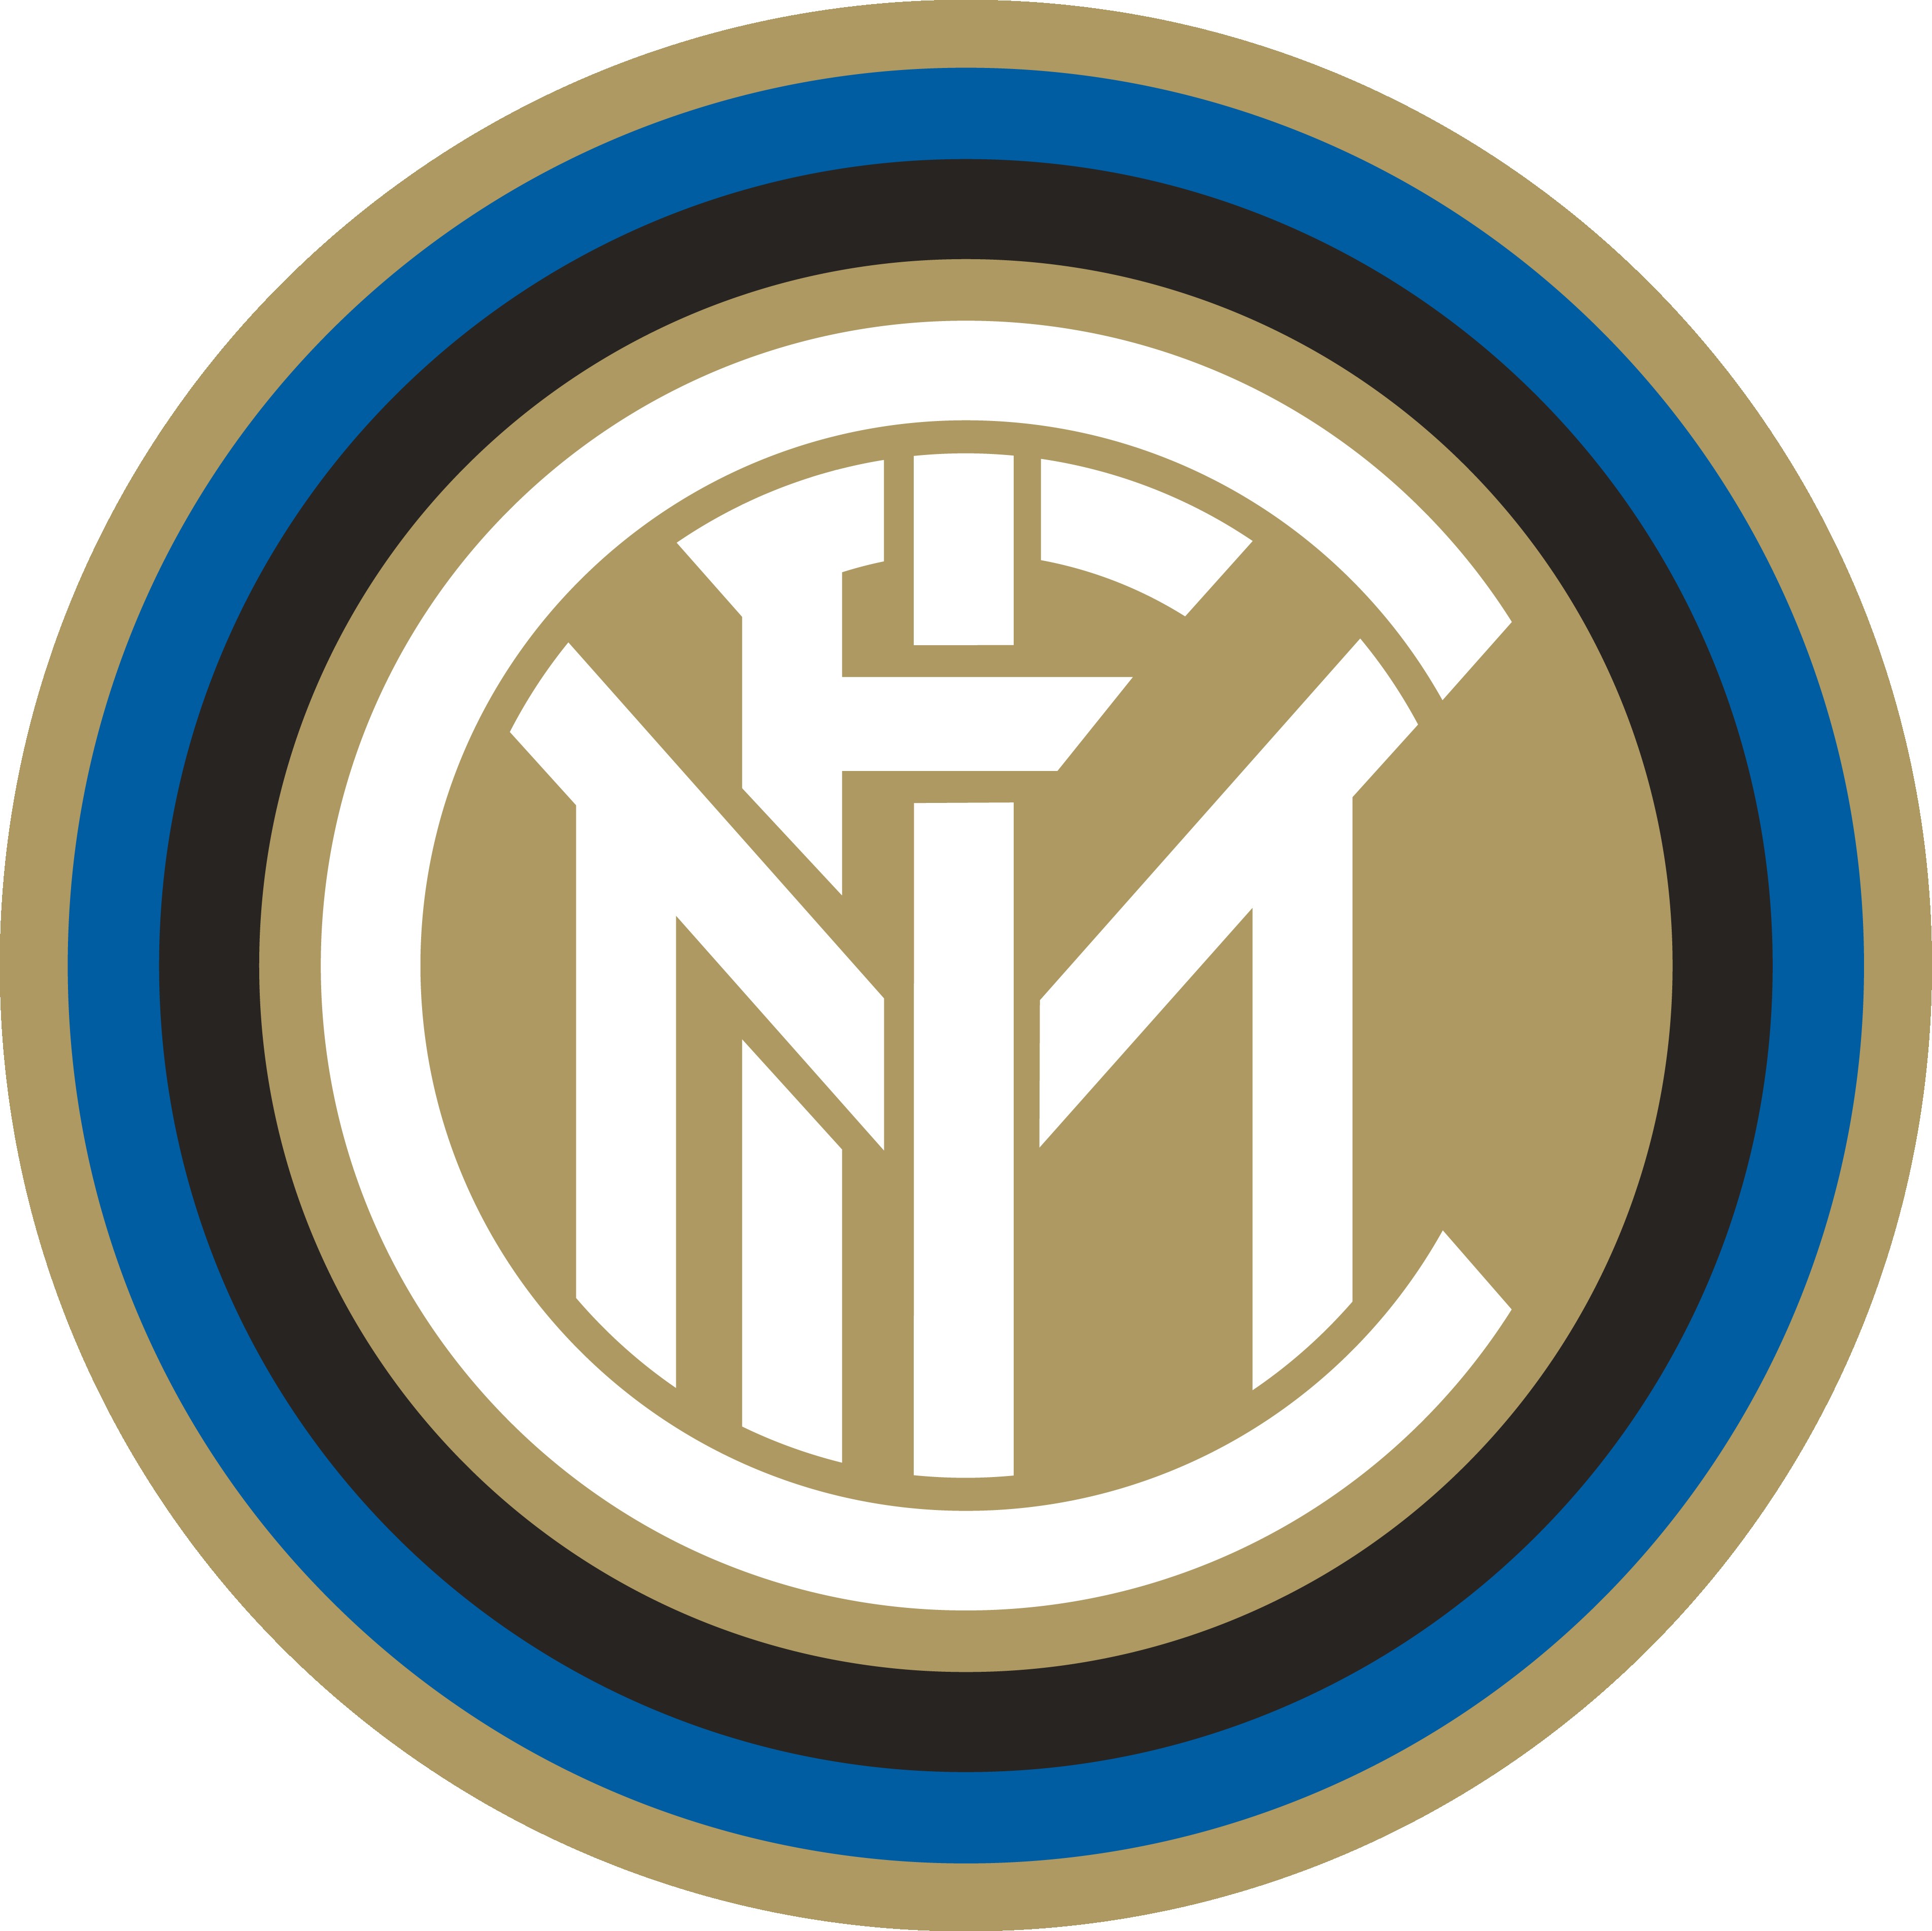 i m f c 4个字母组合而成的,这4个字母是国际米兰足球俱乐部的全称